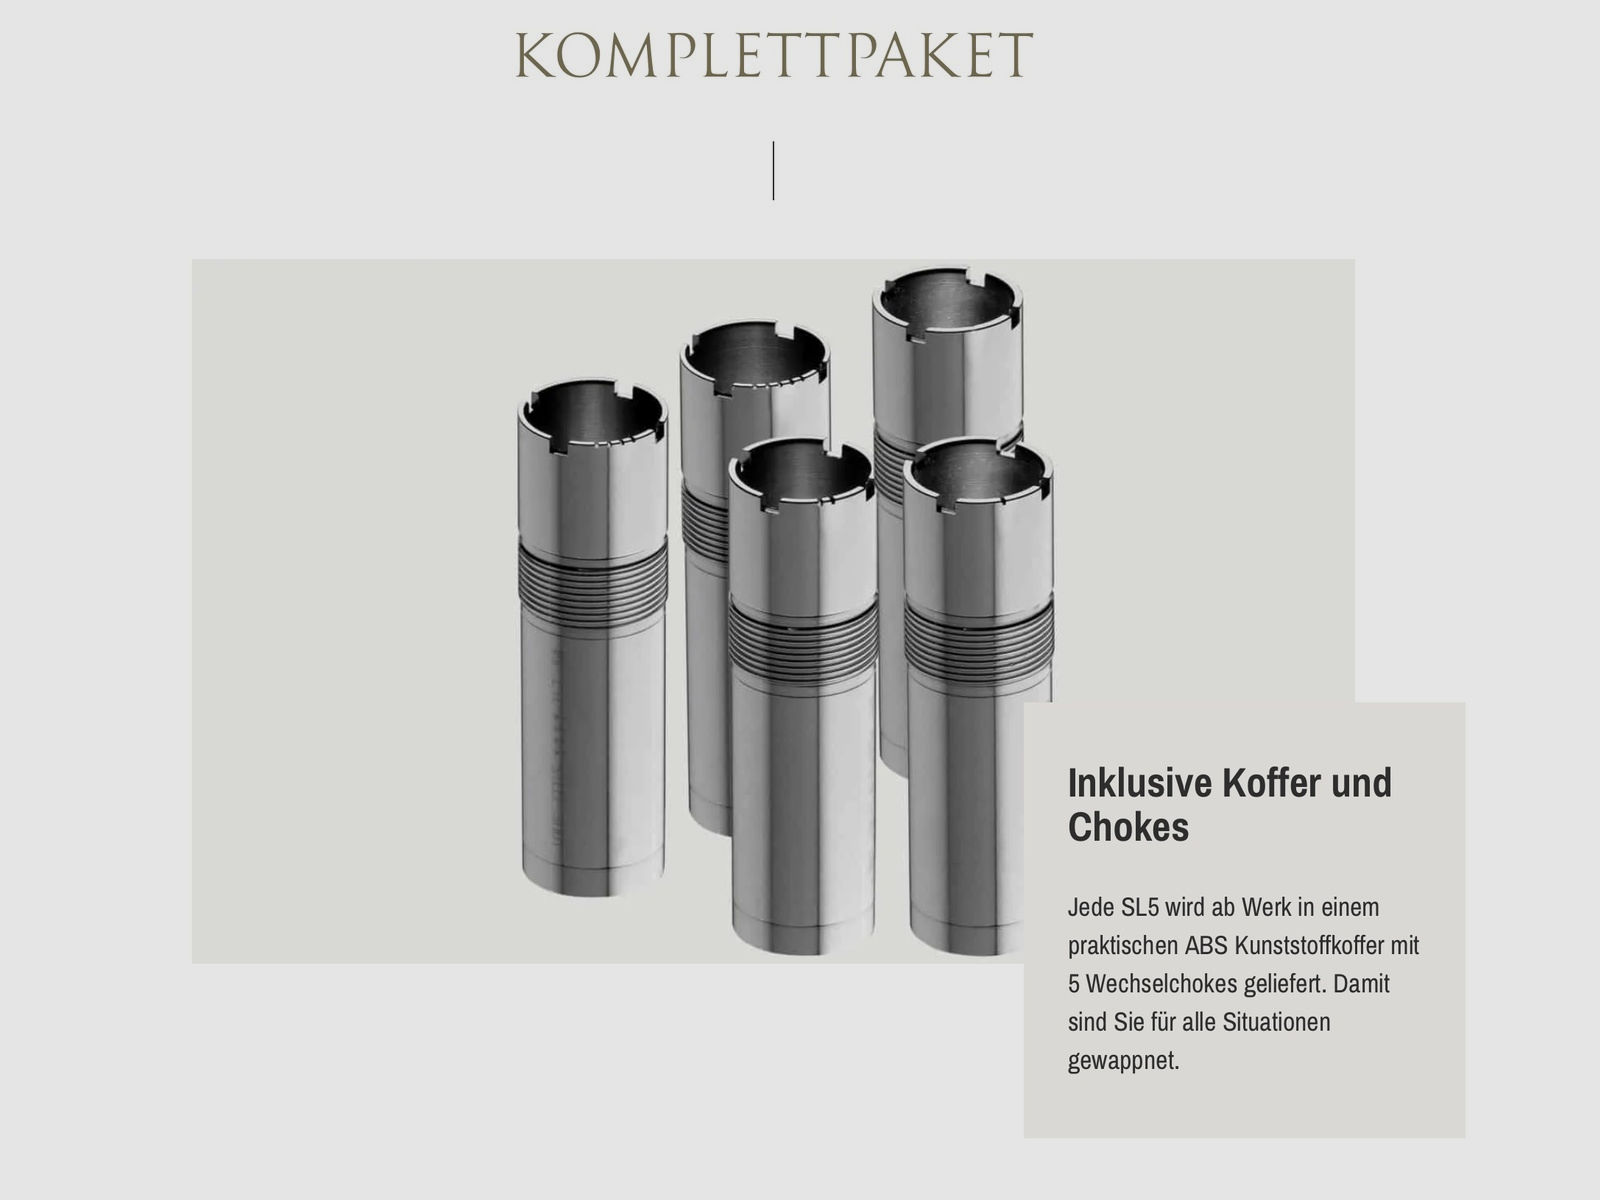 SAUER Selbstladeflinte SL5 Select Kaliber 12/76 70cm Lauflänge Wechselchokes Angebotspaket